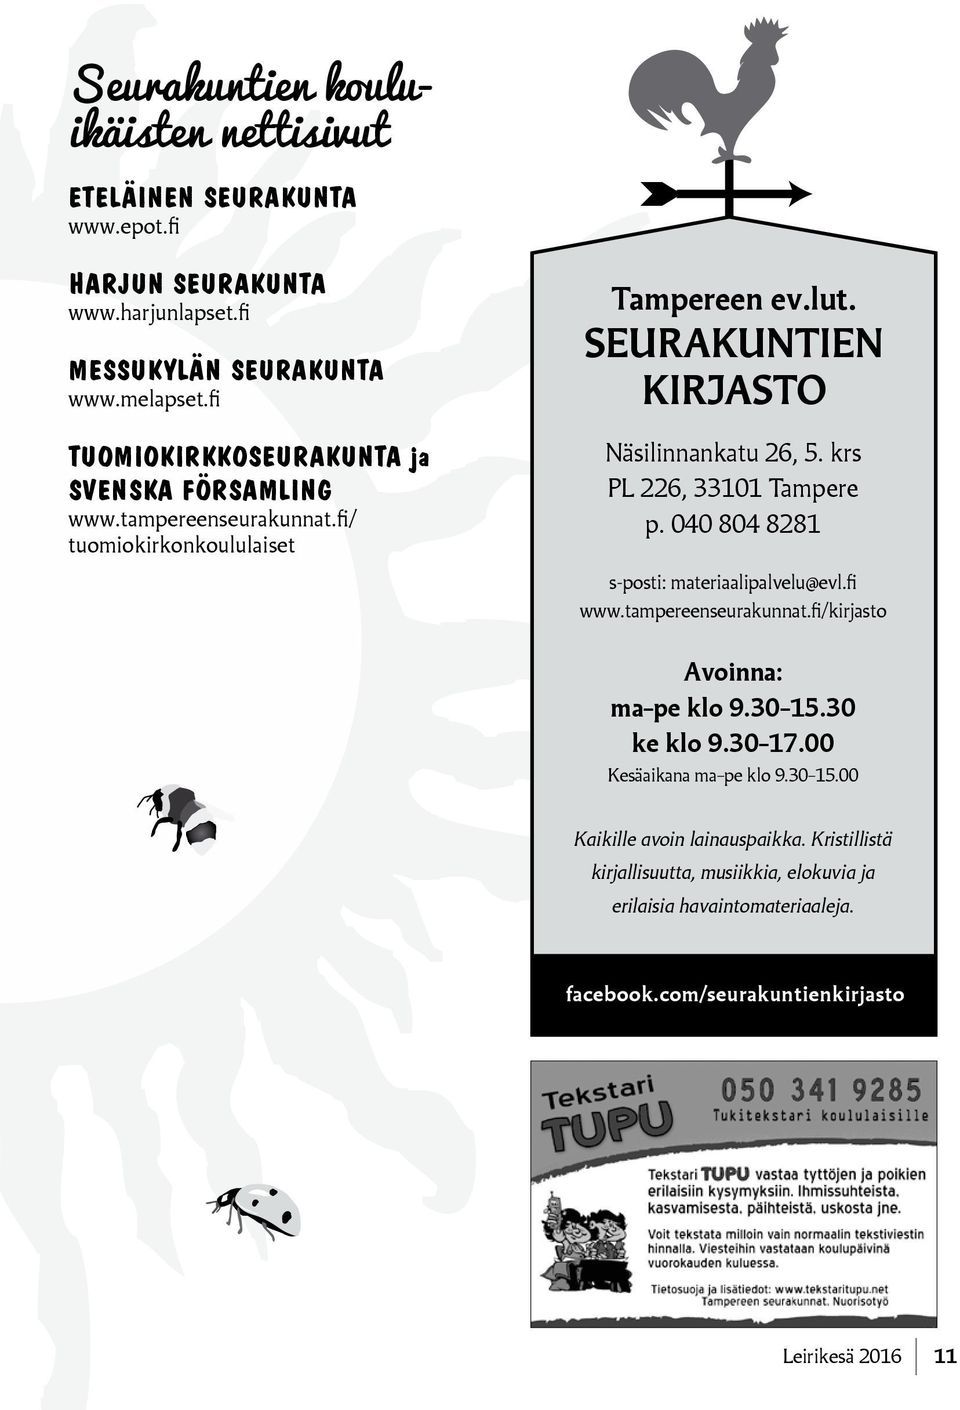 krs PL 226, 33101 Tampere p. 040 804 8281 s-posti: materiaalipalvelu@evl.fi www.tampereenseurakunnat.fi/kirjasto Avoinna: ma pe klo 9.30 15.30 ke klo 9.30 17.